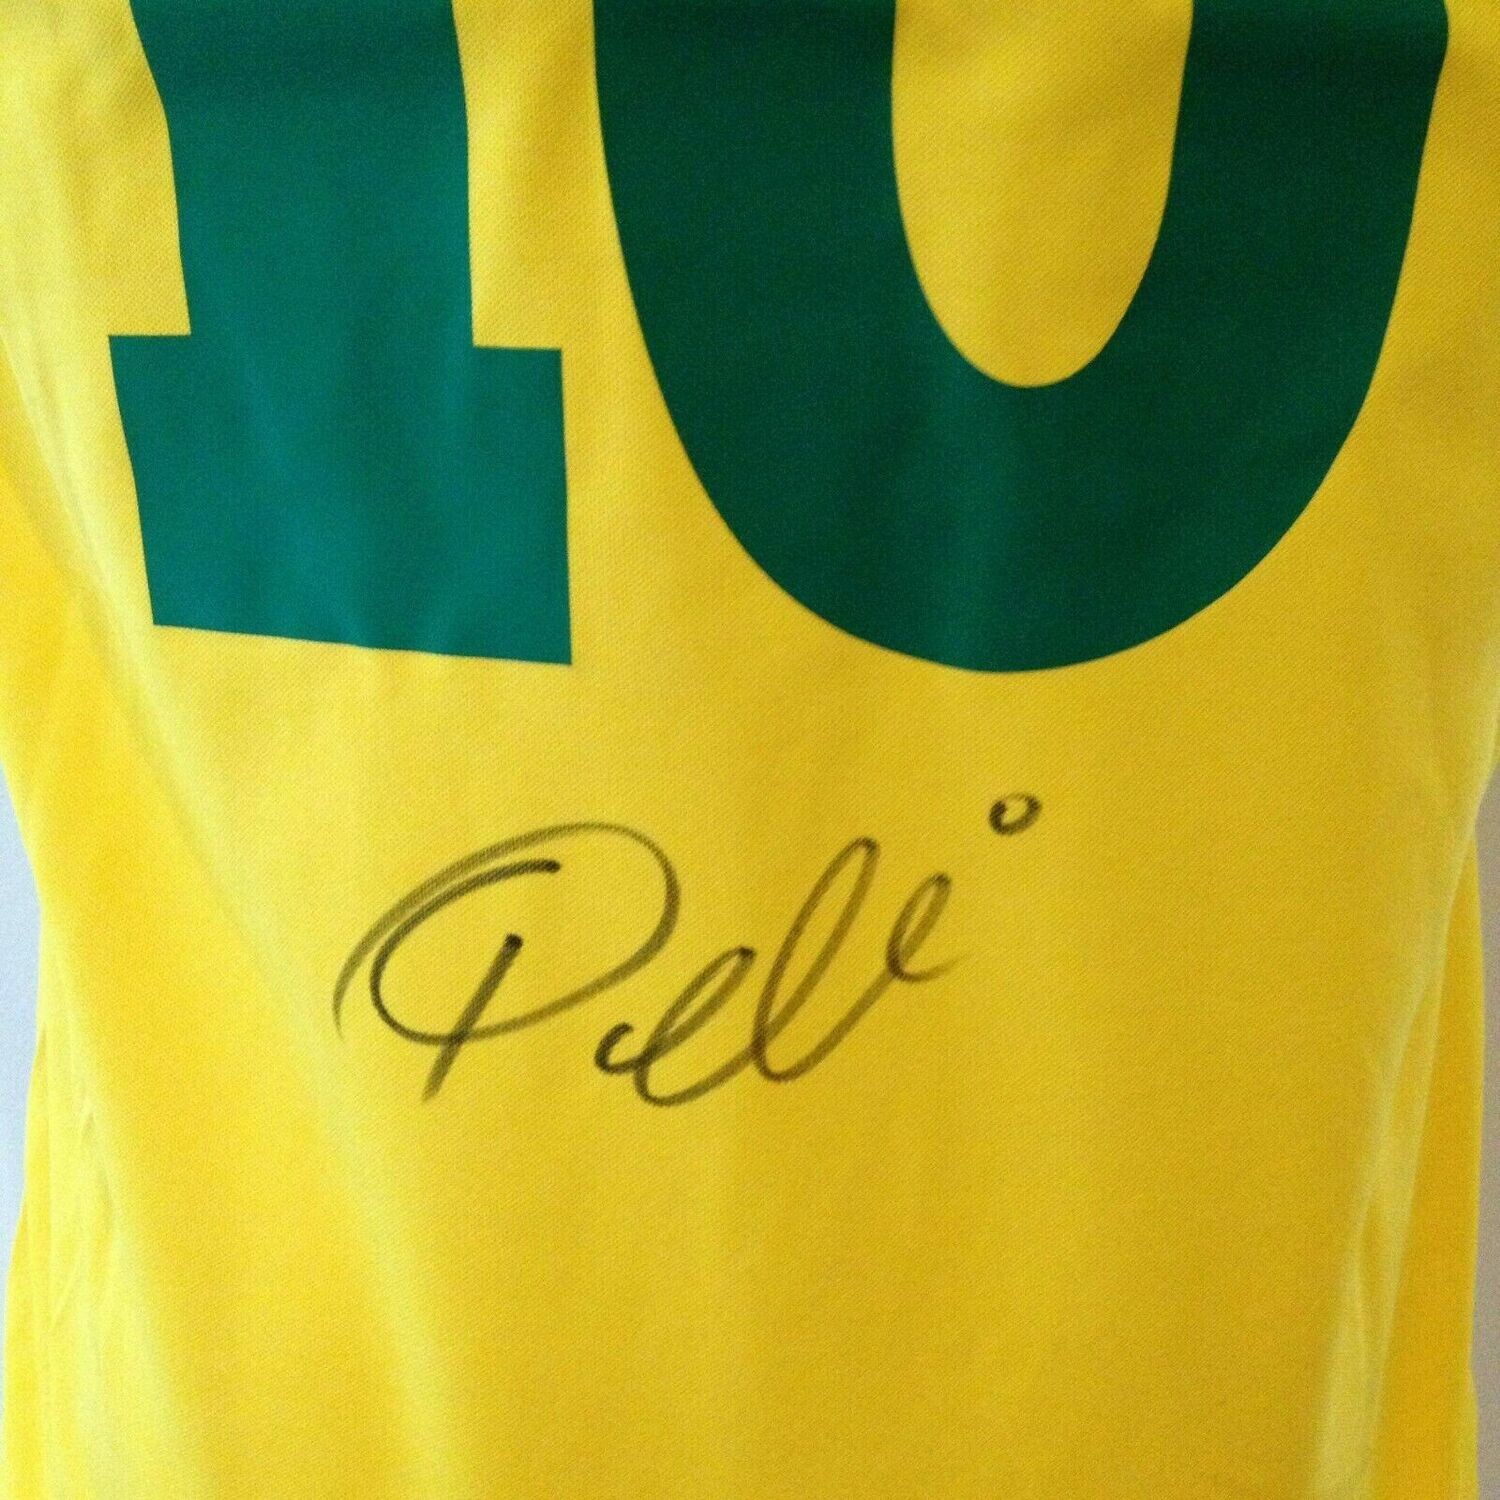 Brasile  Autografata da Pele con certificato di autenticita' Signed From PELE with certificate coa of authetincitiy SPEDIZIONE GRATIS SHIPPING FREE